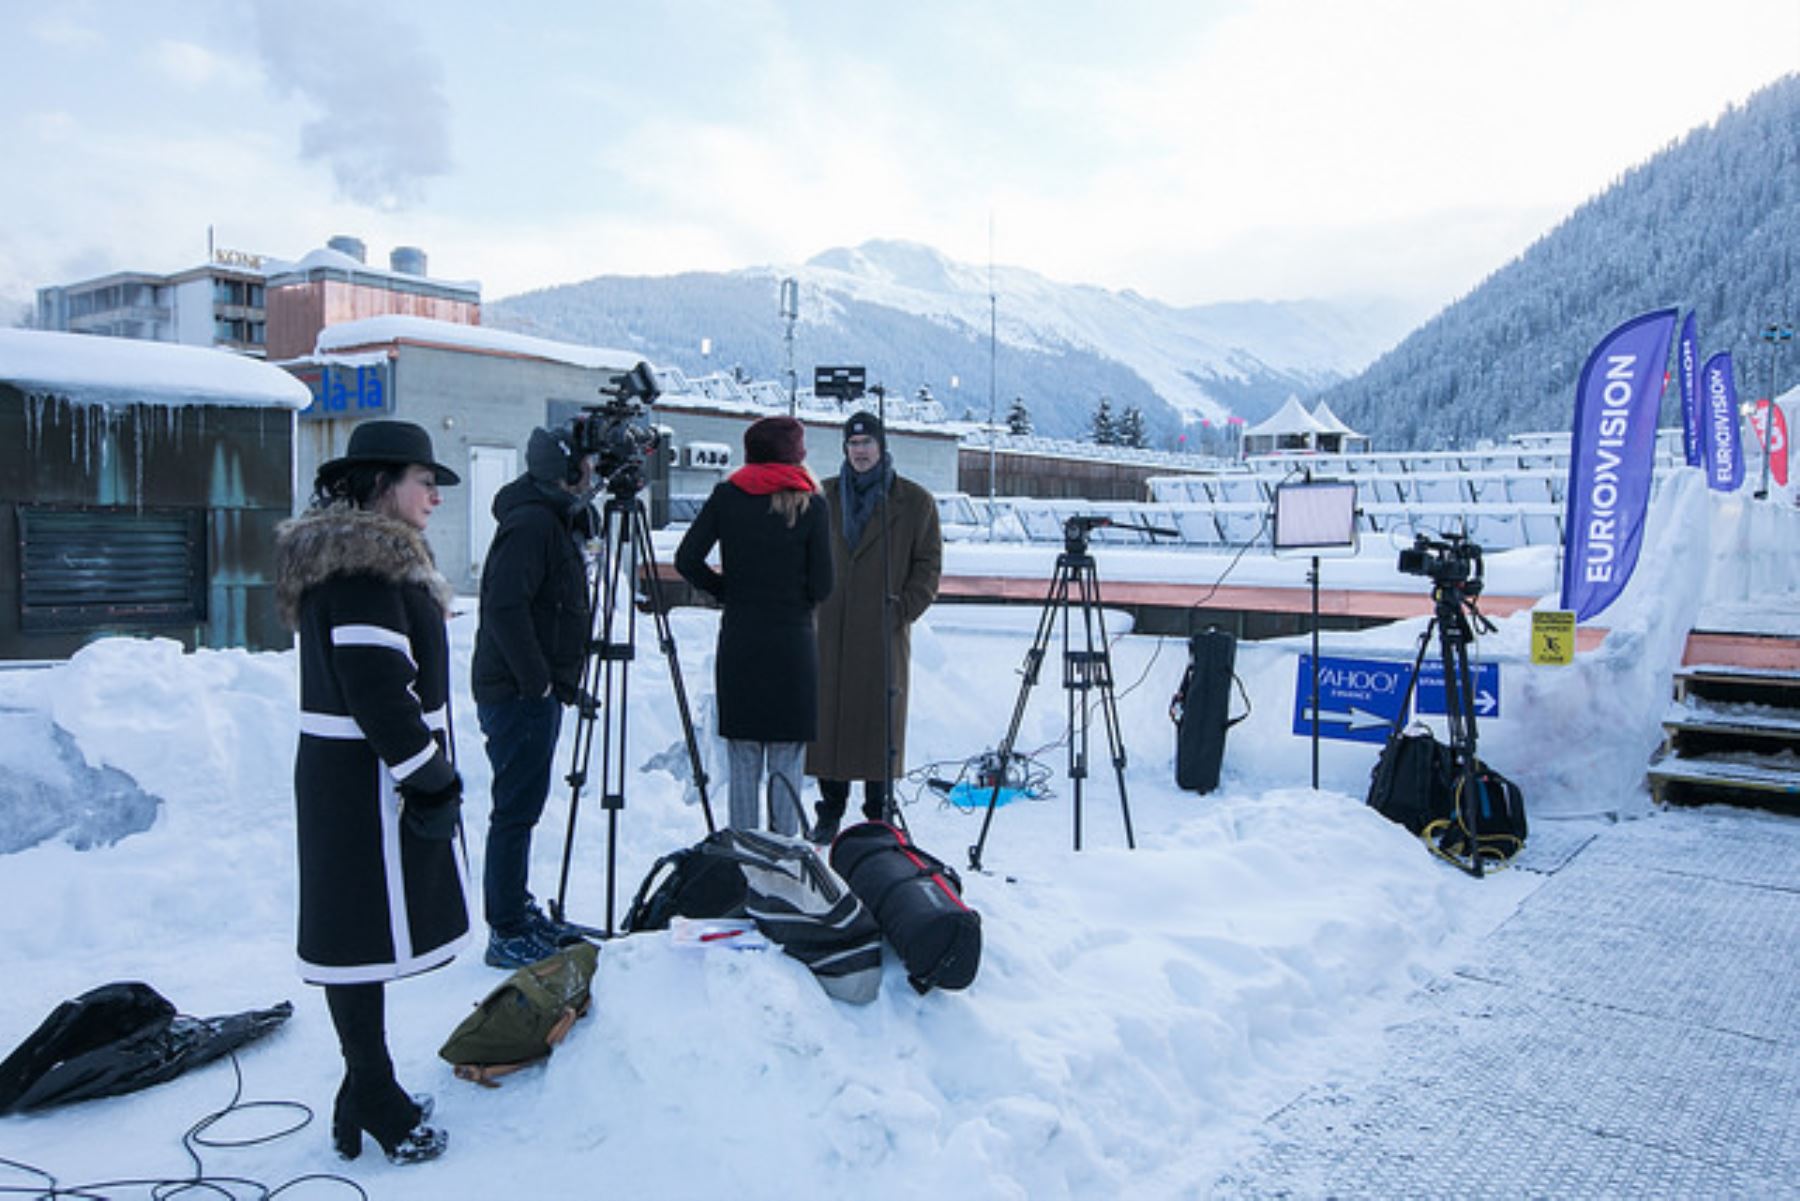 La prensa internacional cubre las reuniones de Davos bajo extremadas temperaturas. Foto: WEF.